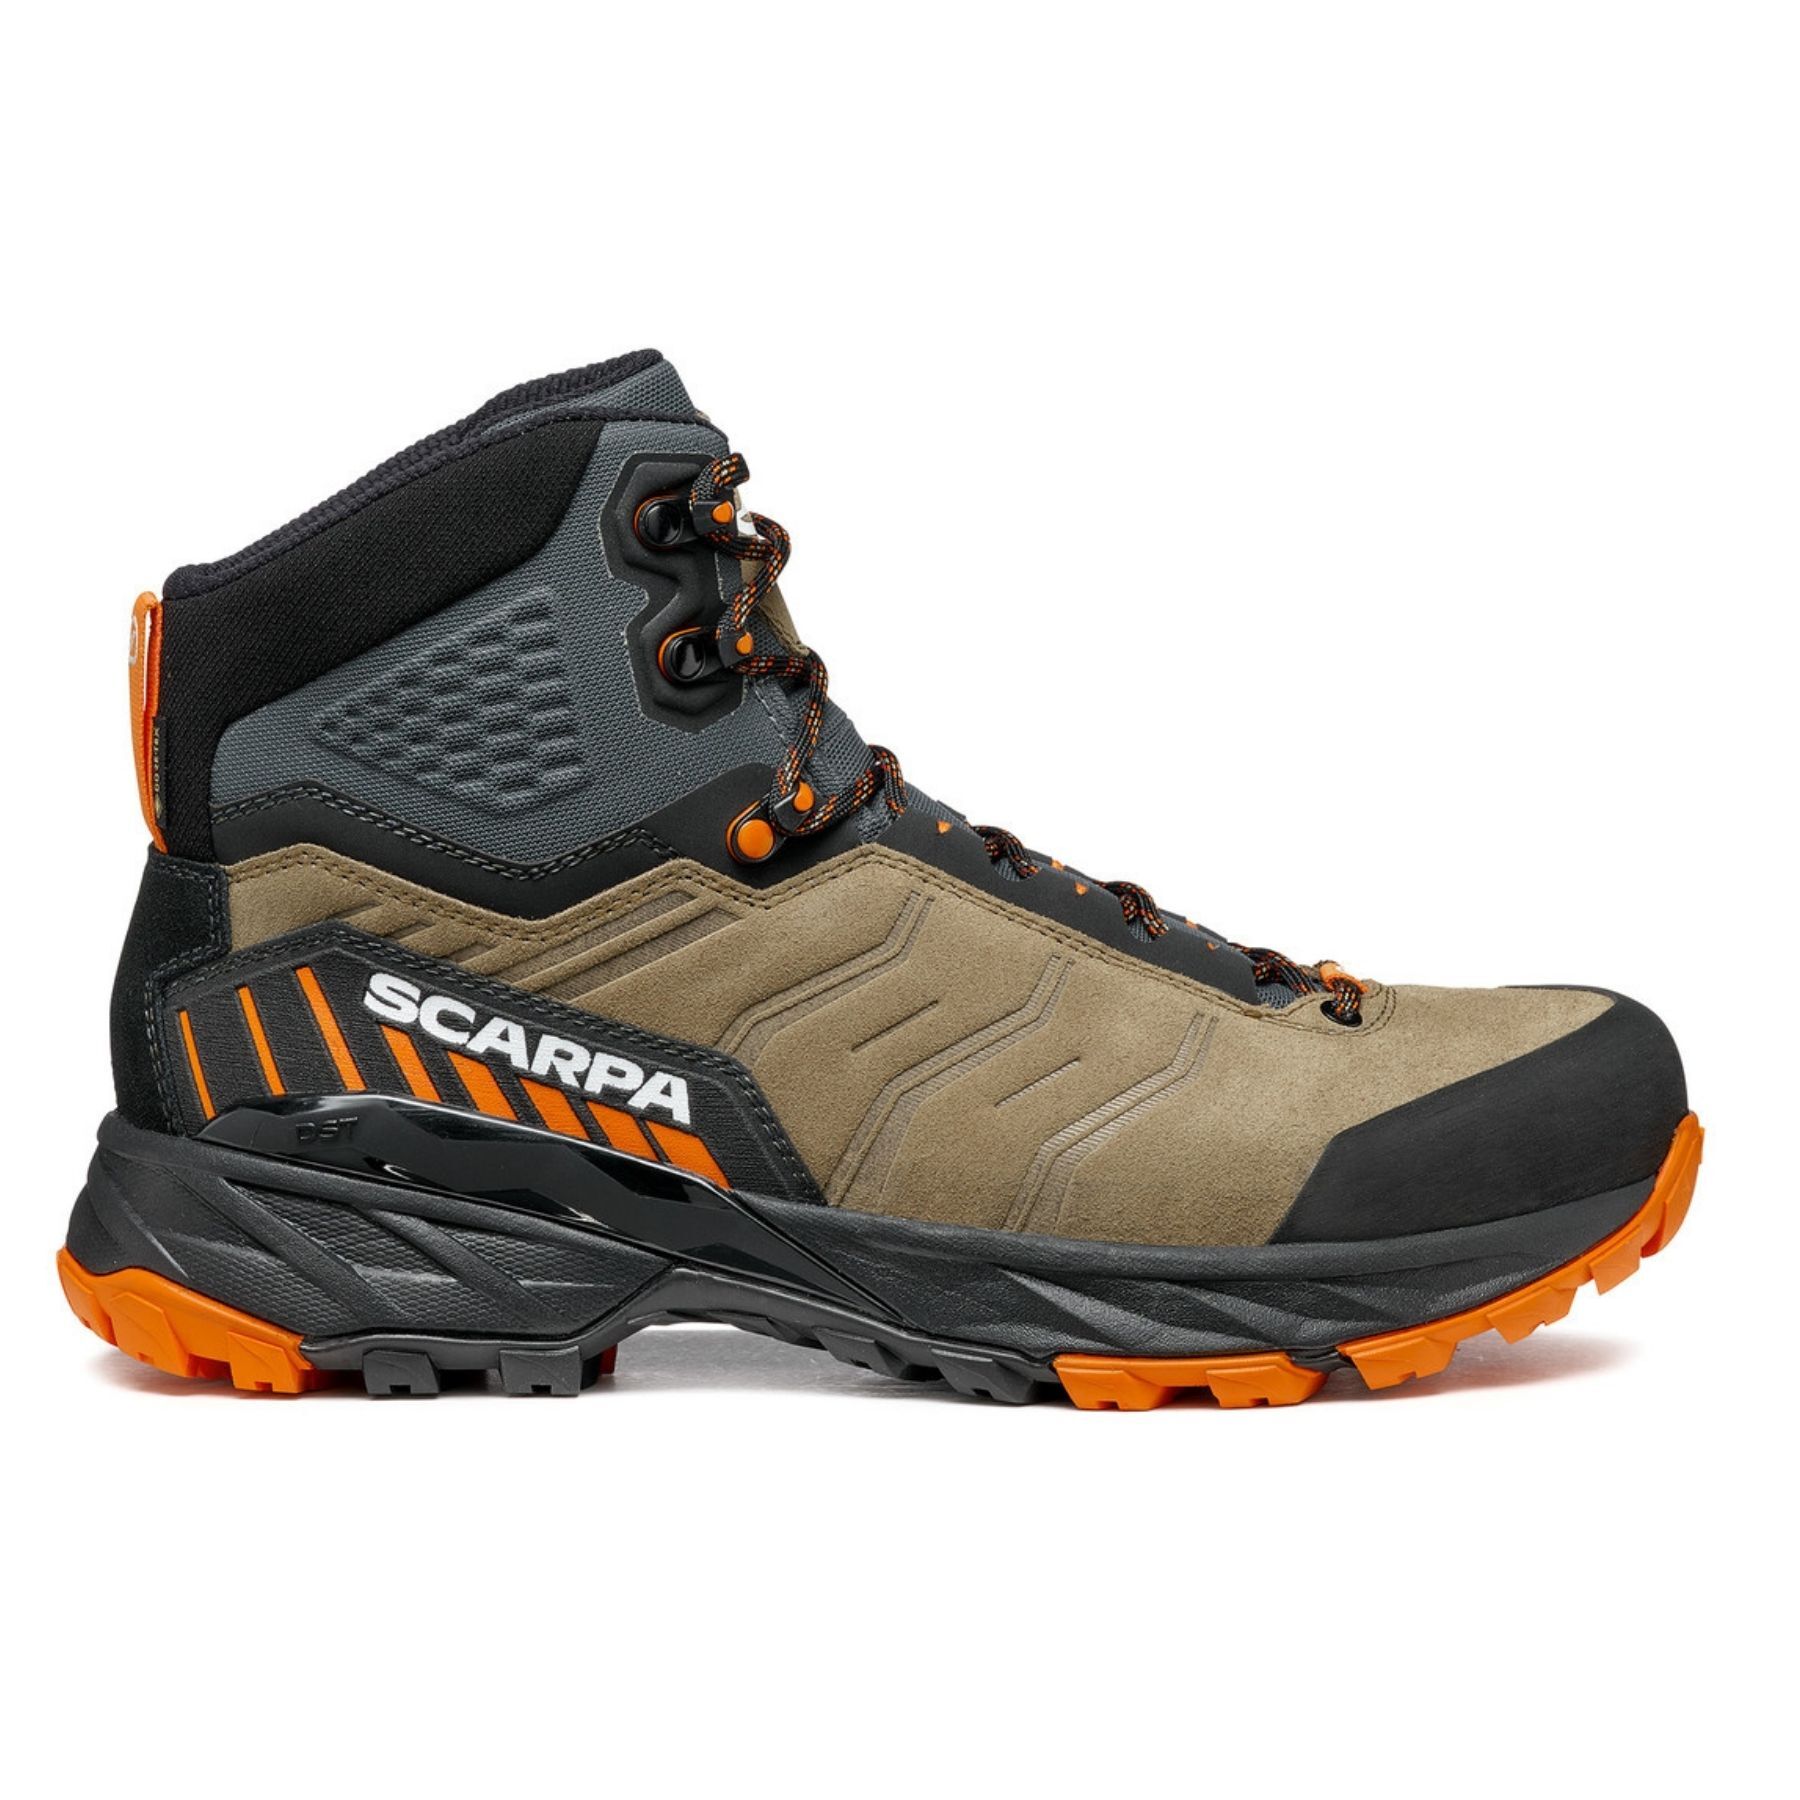 Scarpa Rush Trek GTX - Hiking boots - Women's